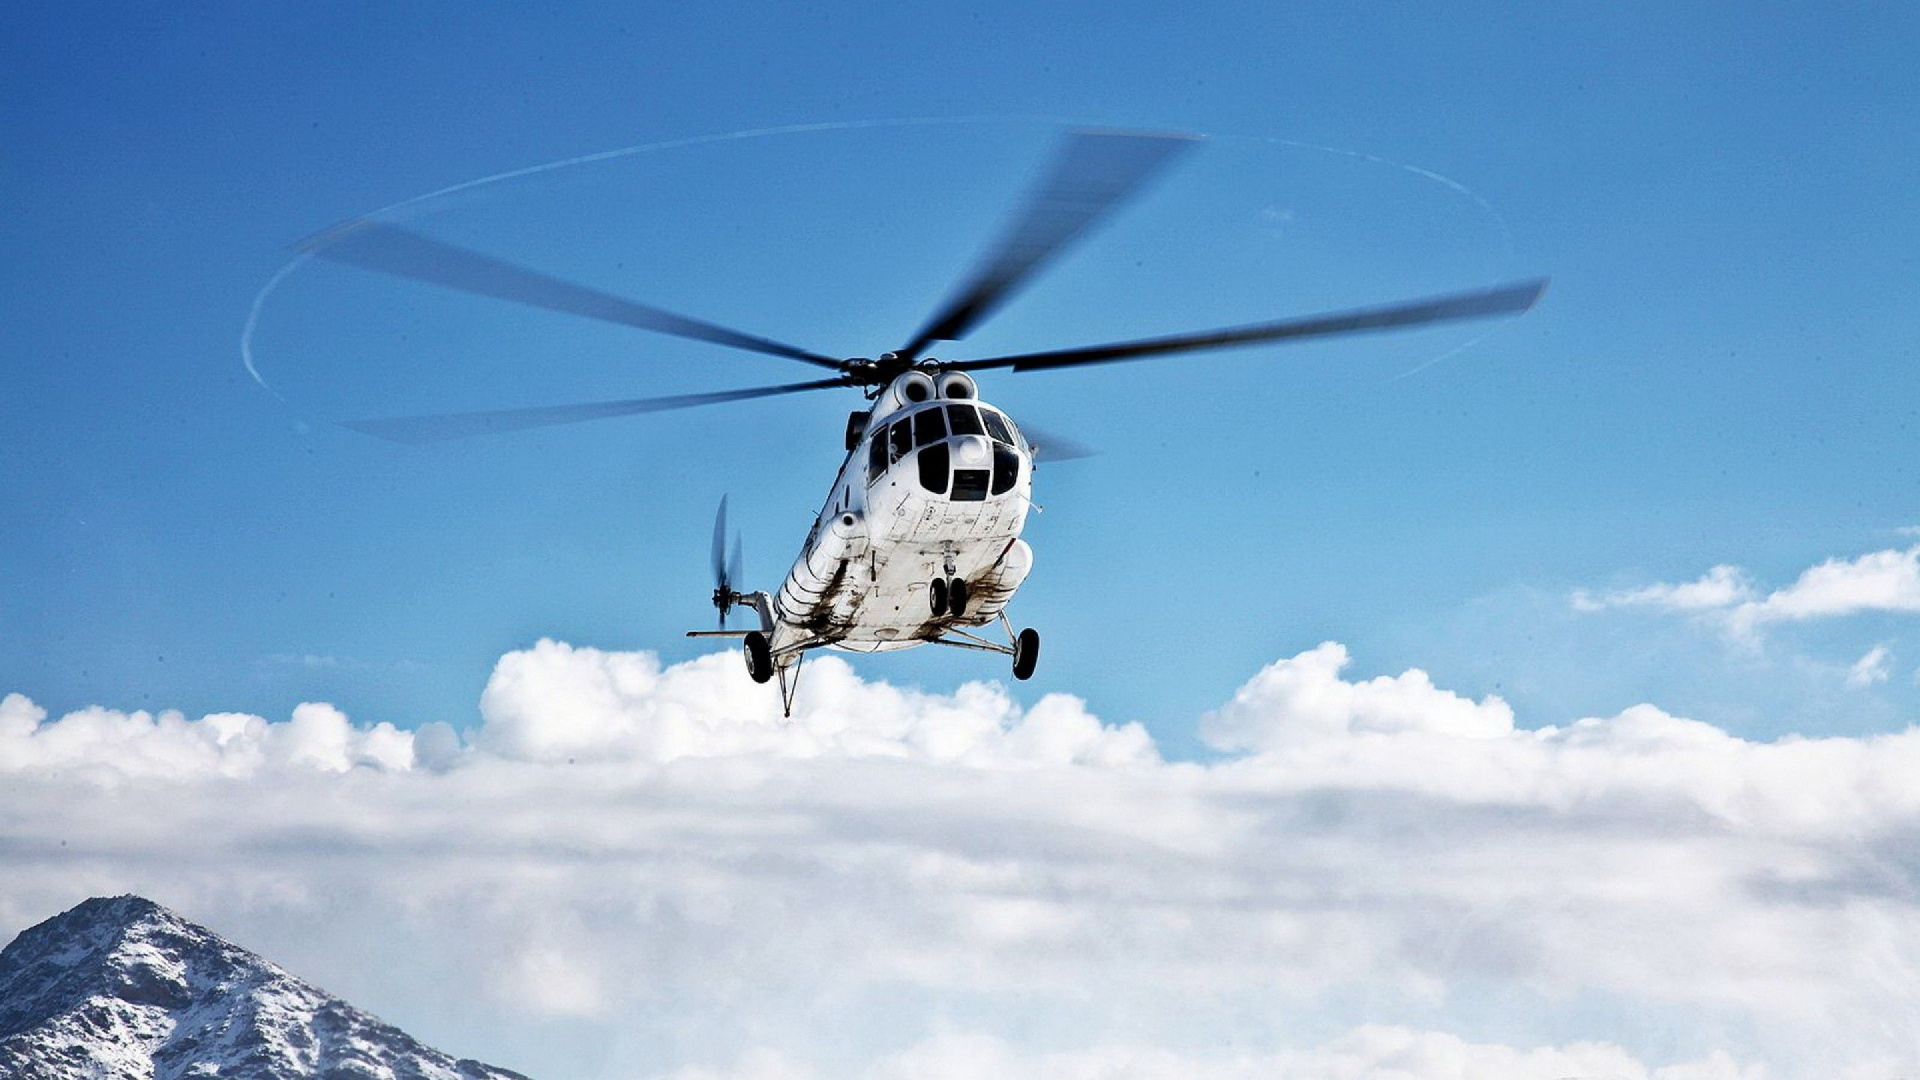 直升机, 军用直升机, 直升机转子的, 旋翼飞机, 航空 壁纸 1920x1080 允许